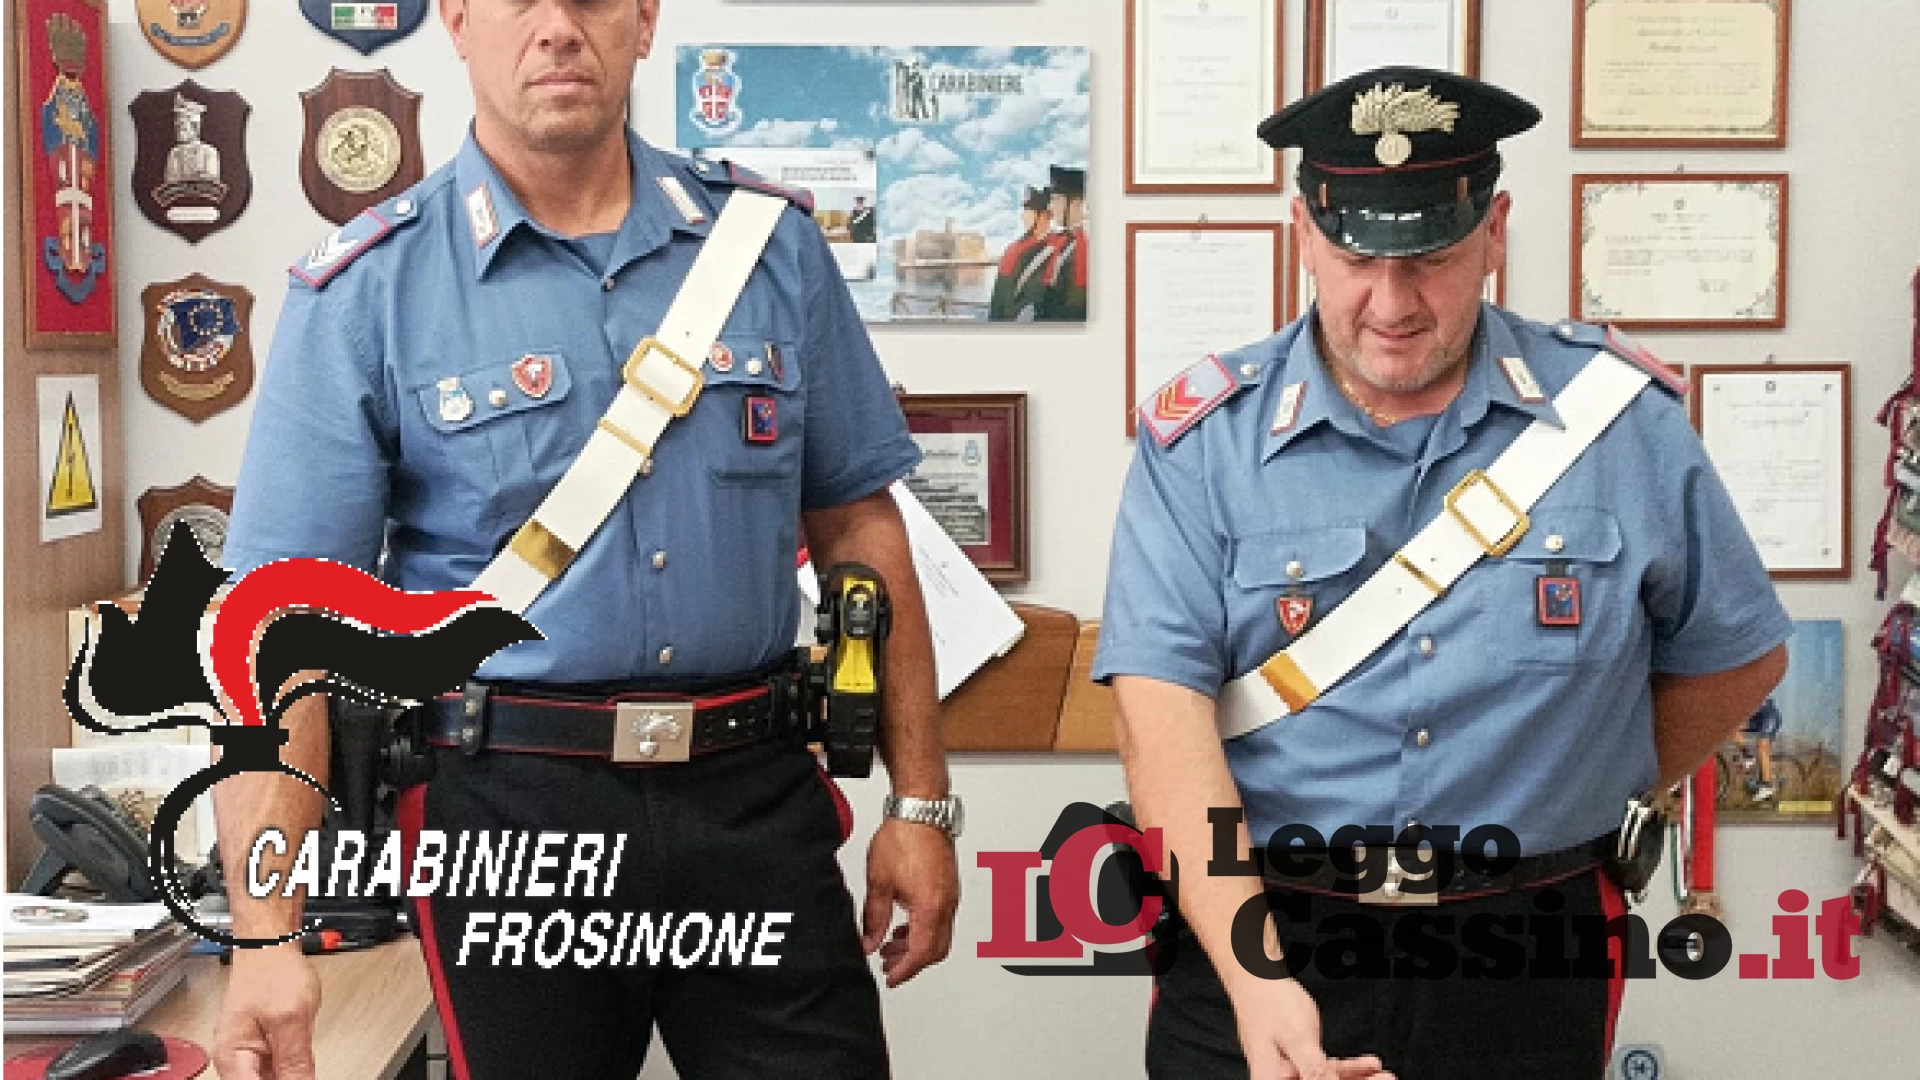 In giro con 5 kg di hashish, a Cassino arrestato un 31enne